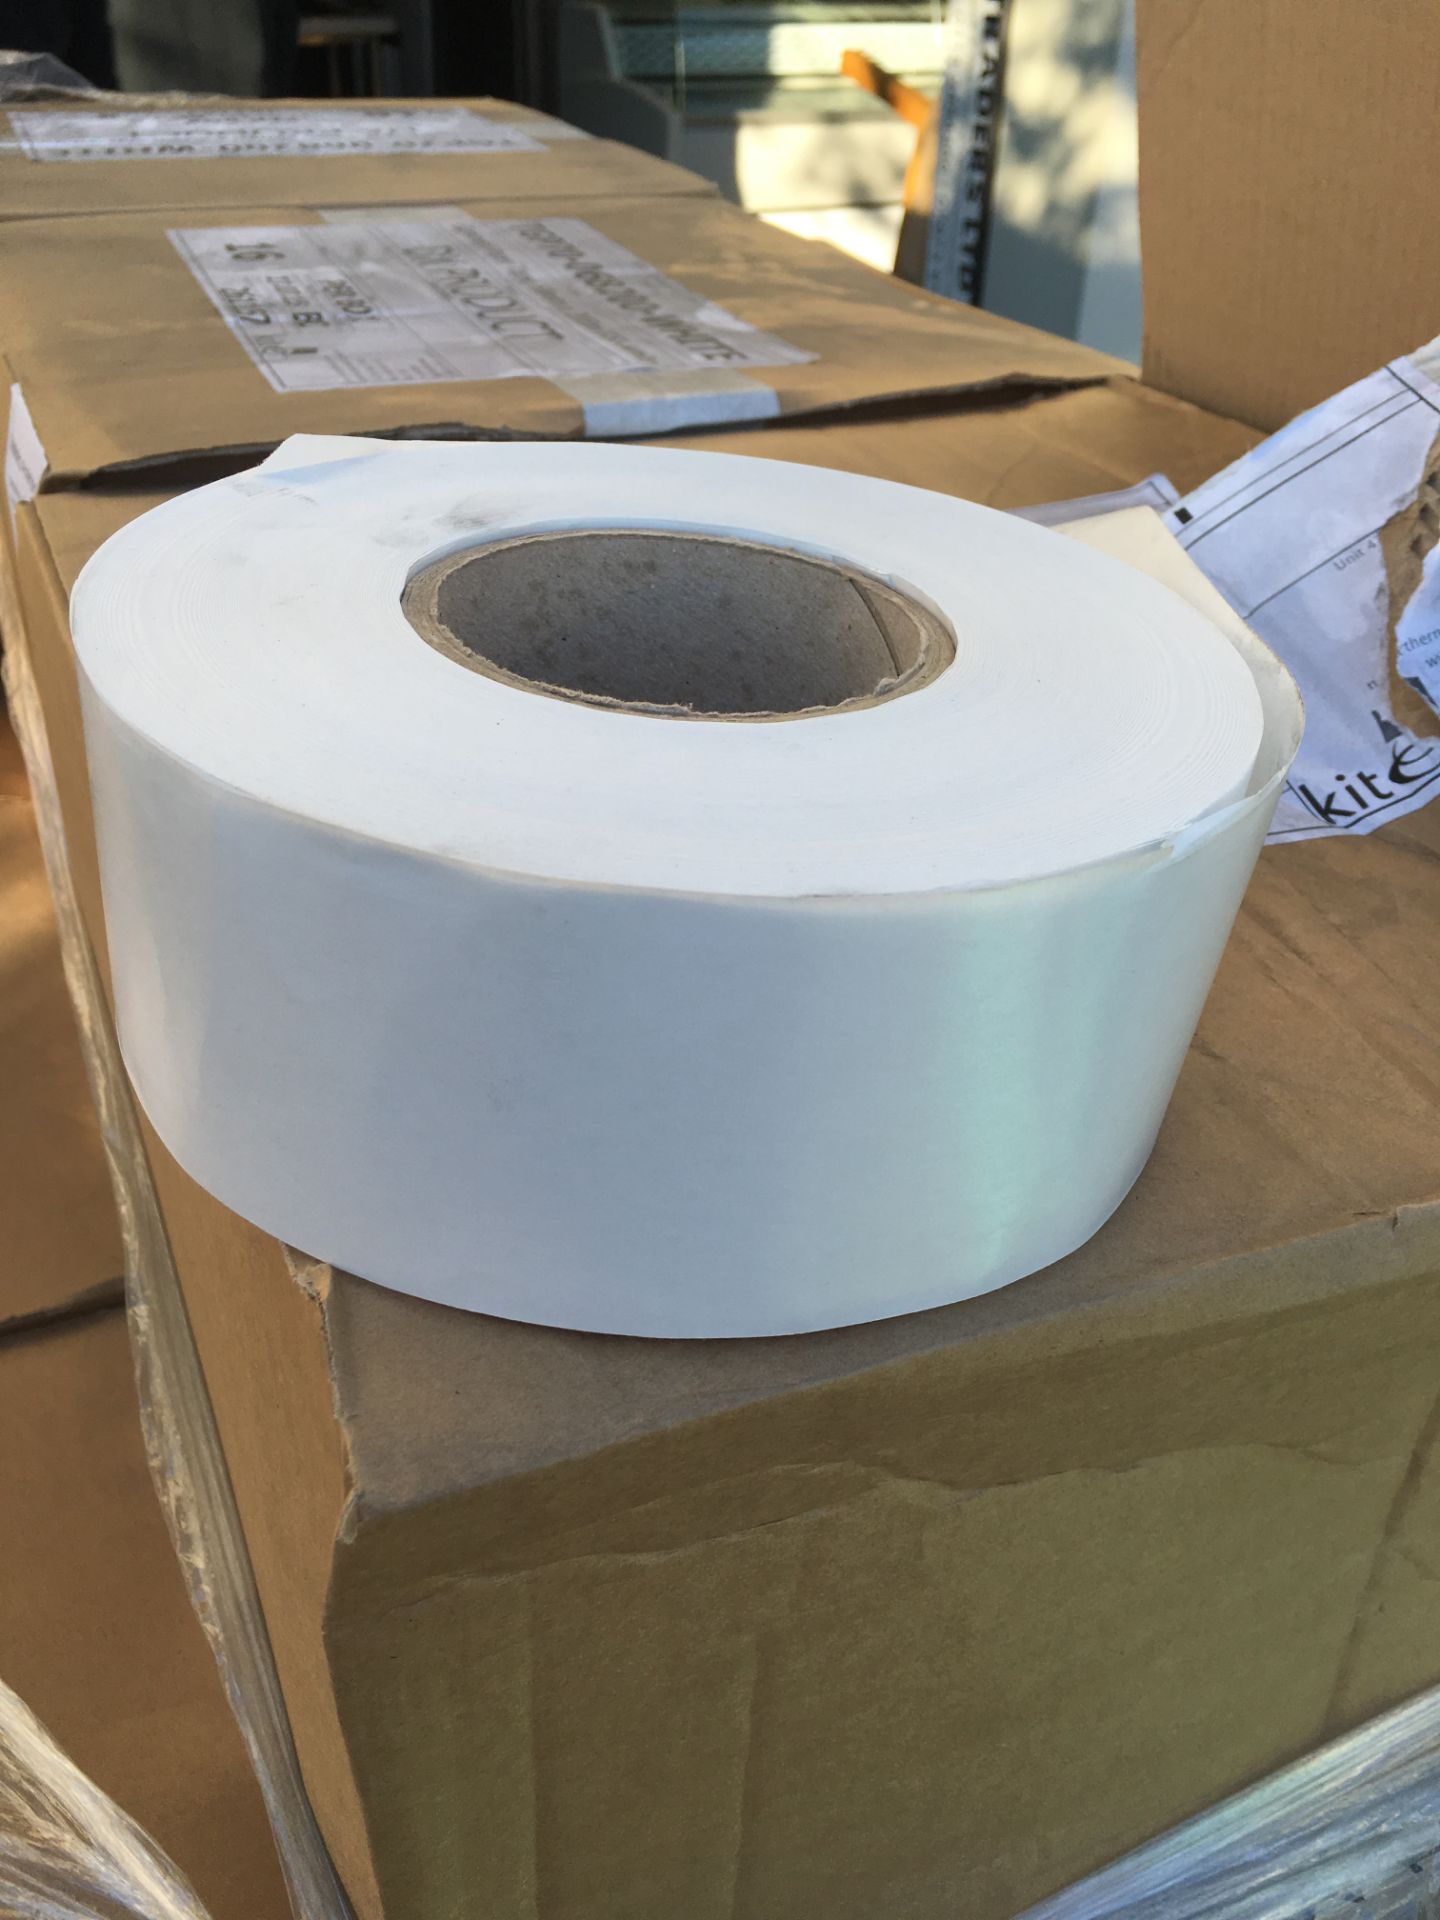 Box of White Gummed Paper Tape...